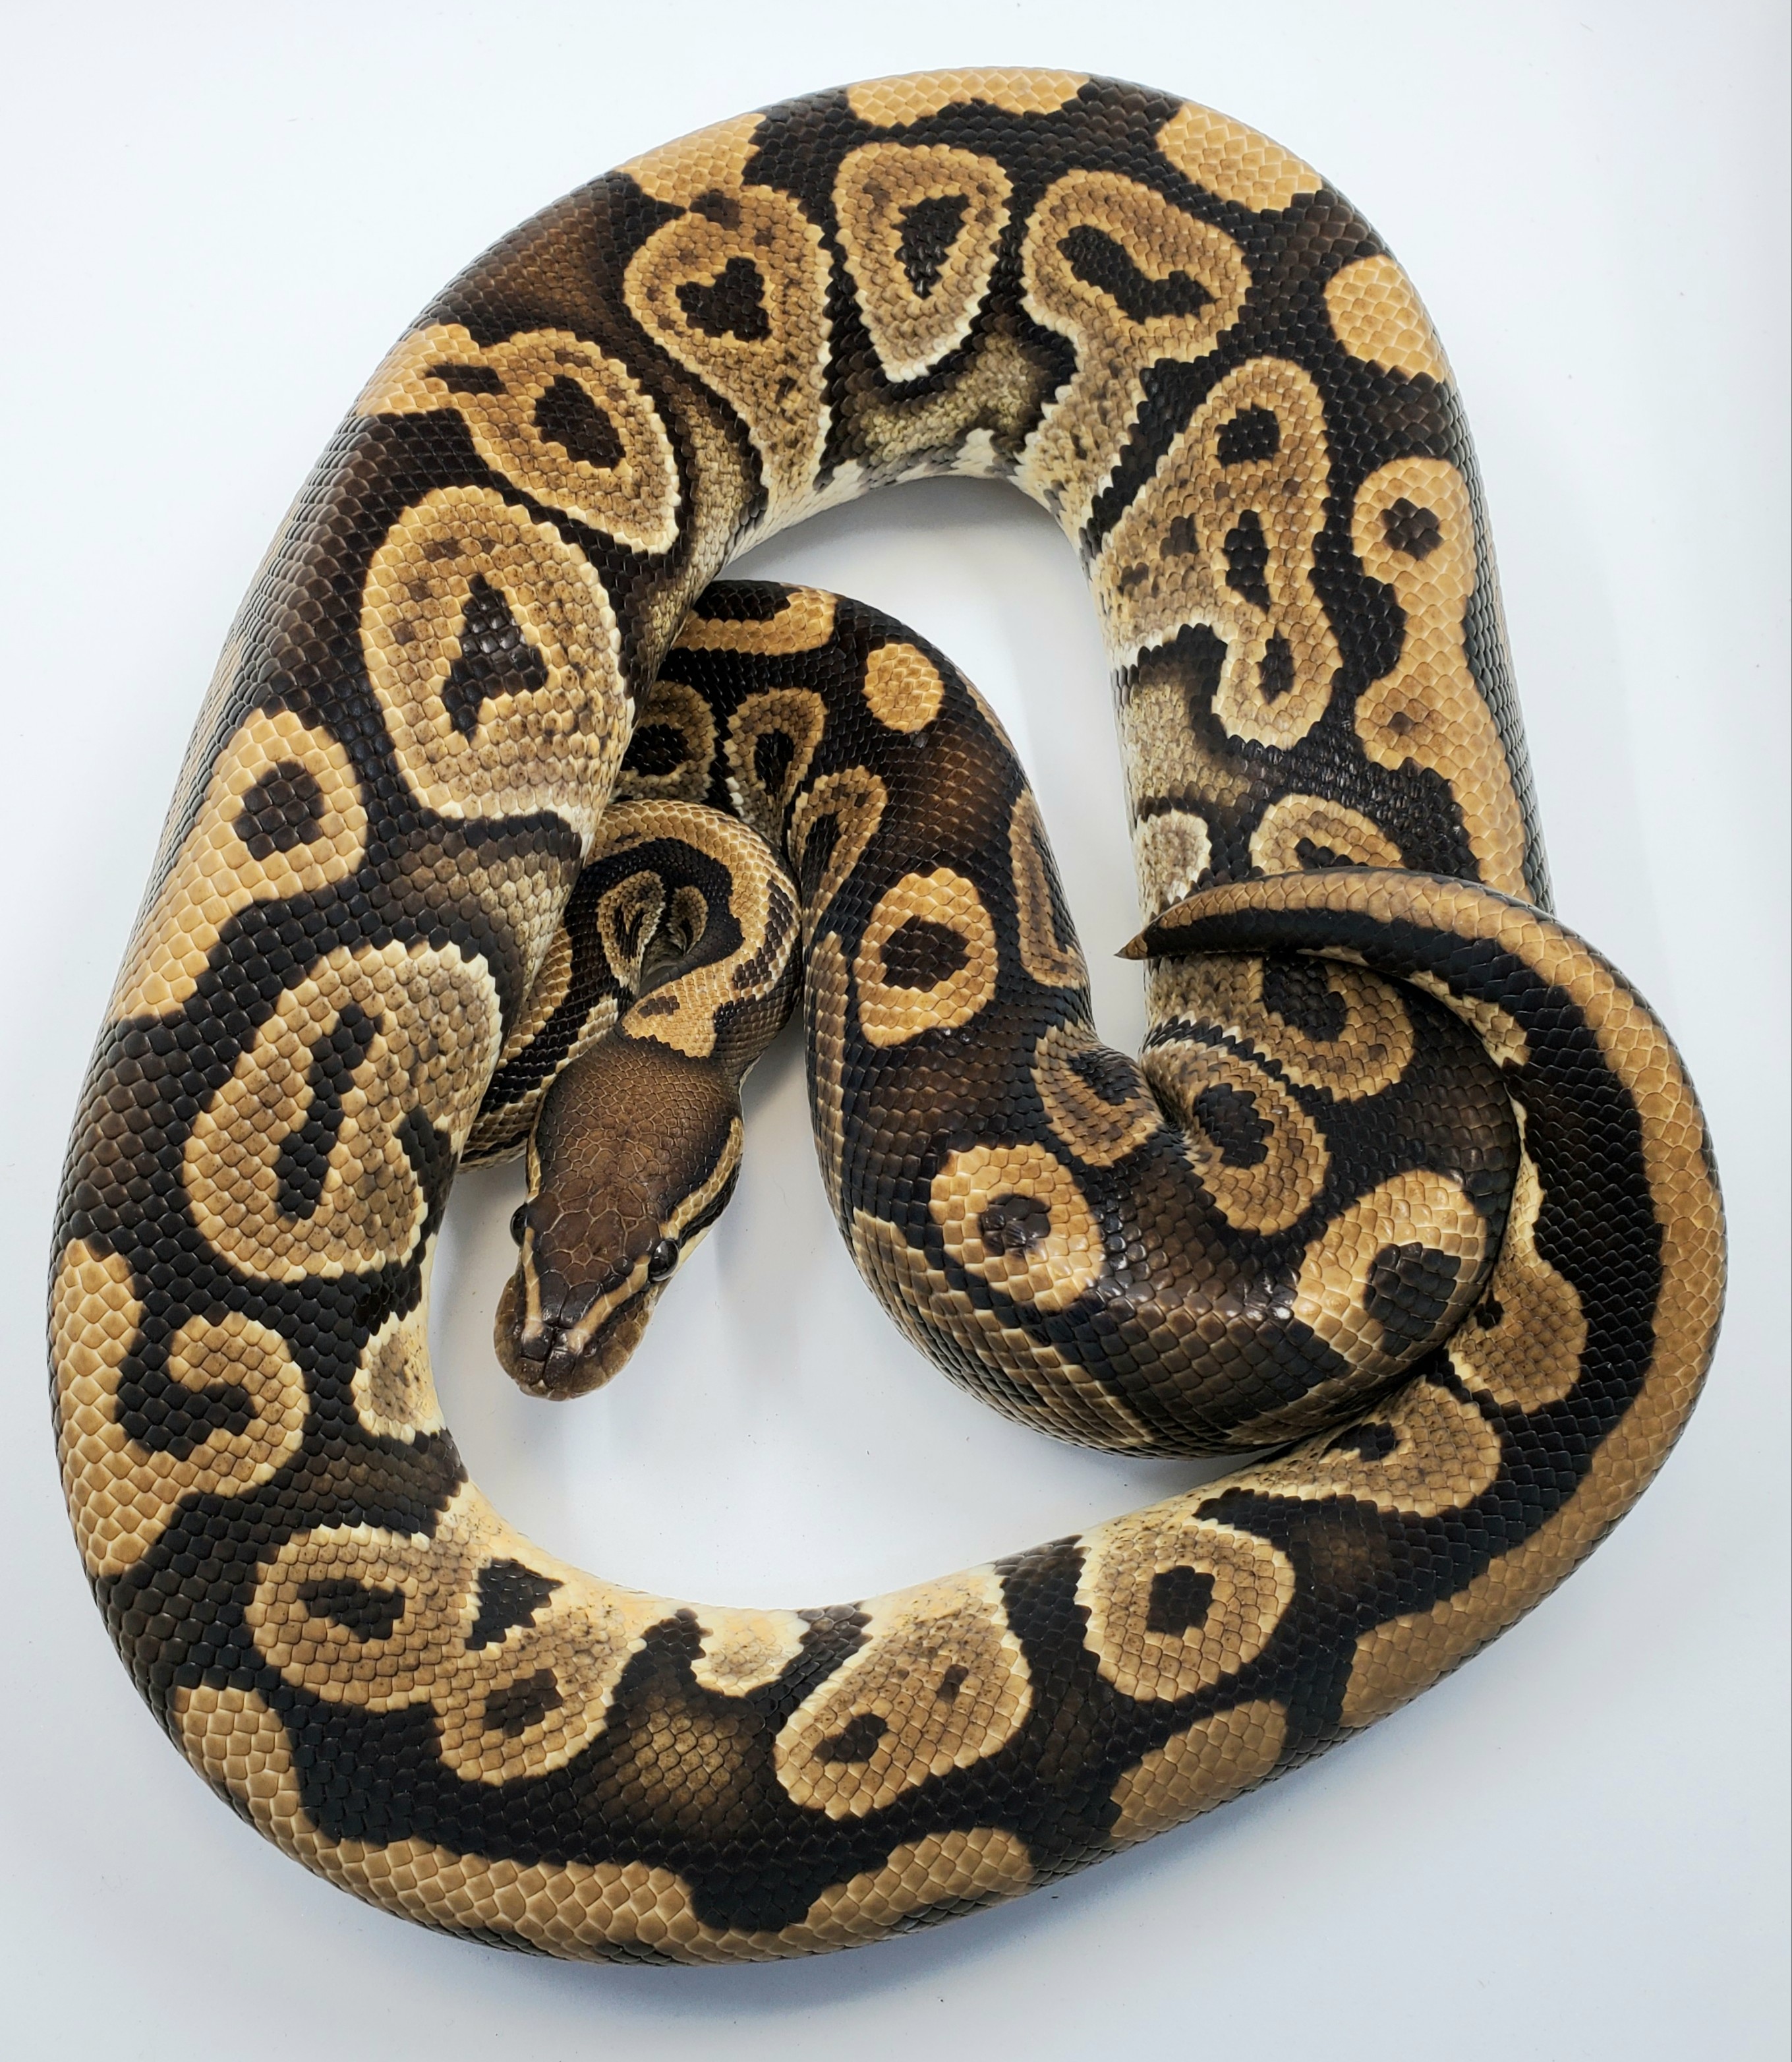 Huffman Ball Python by Bronze Serpent Reptiles